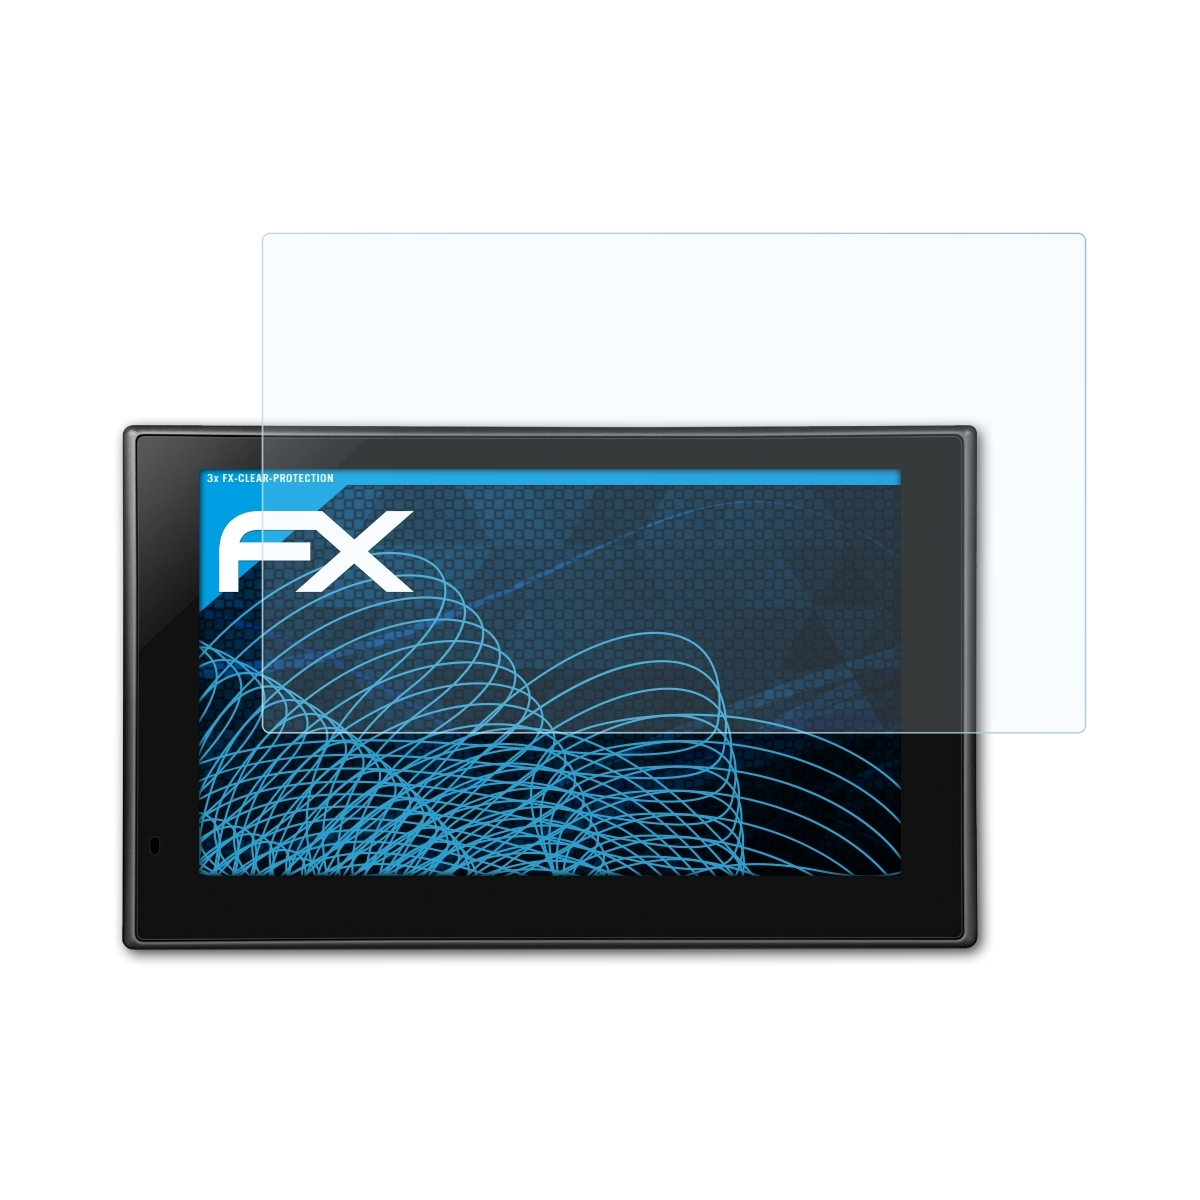 ATFOLIX 3x FX-Clear nüvi Garmin Displayschutz(für 2639LMT)